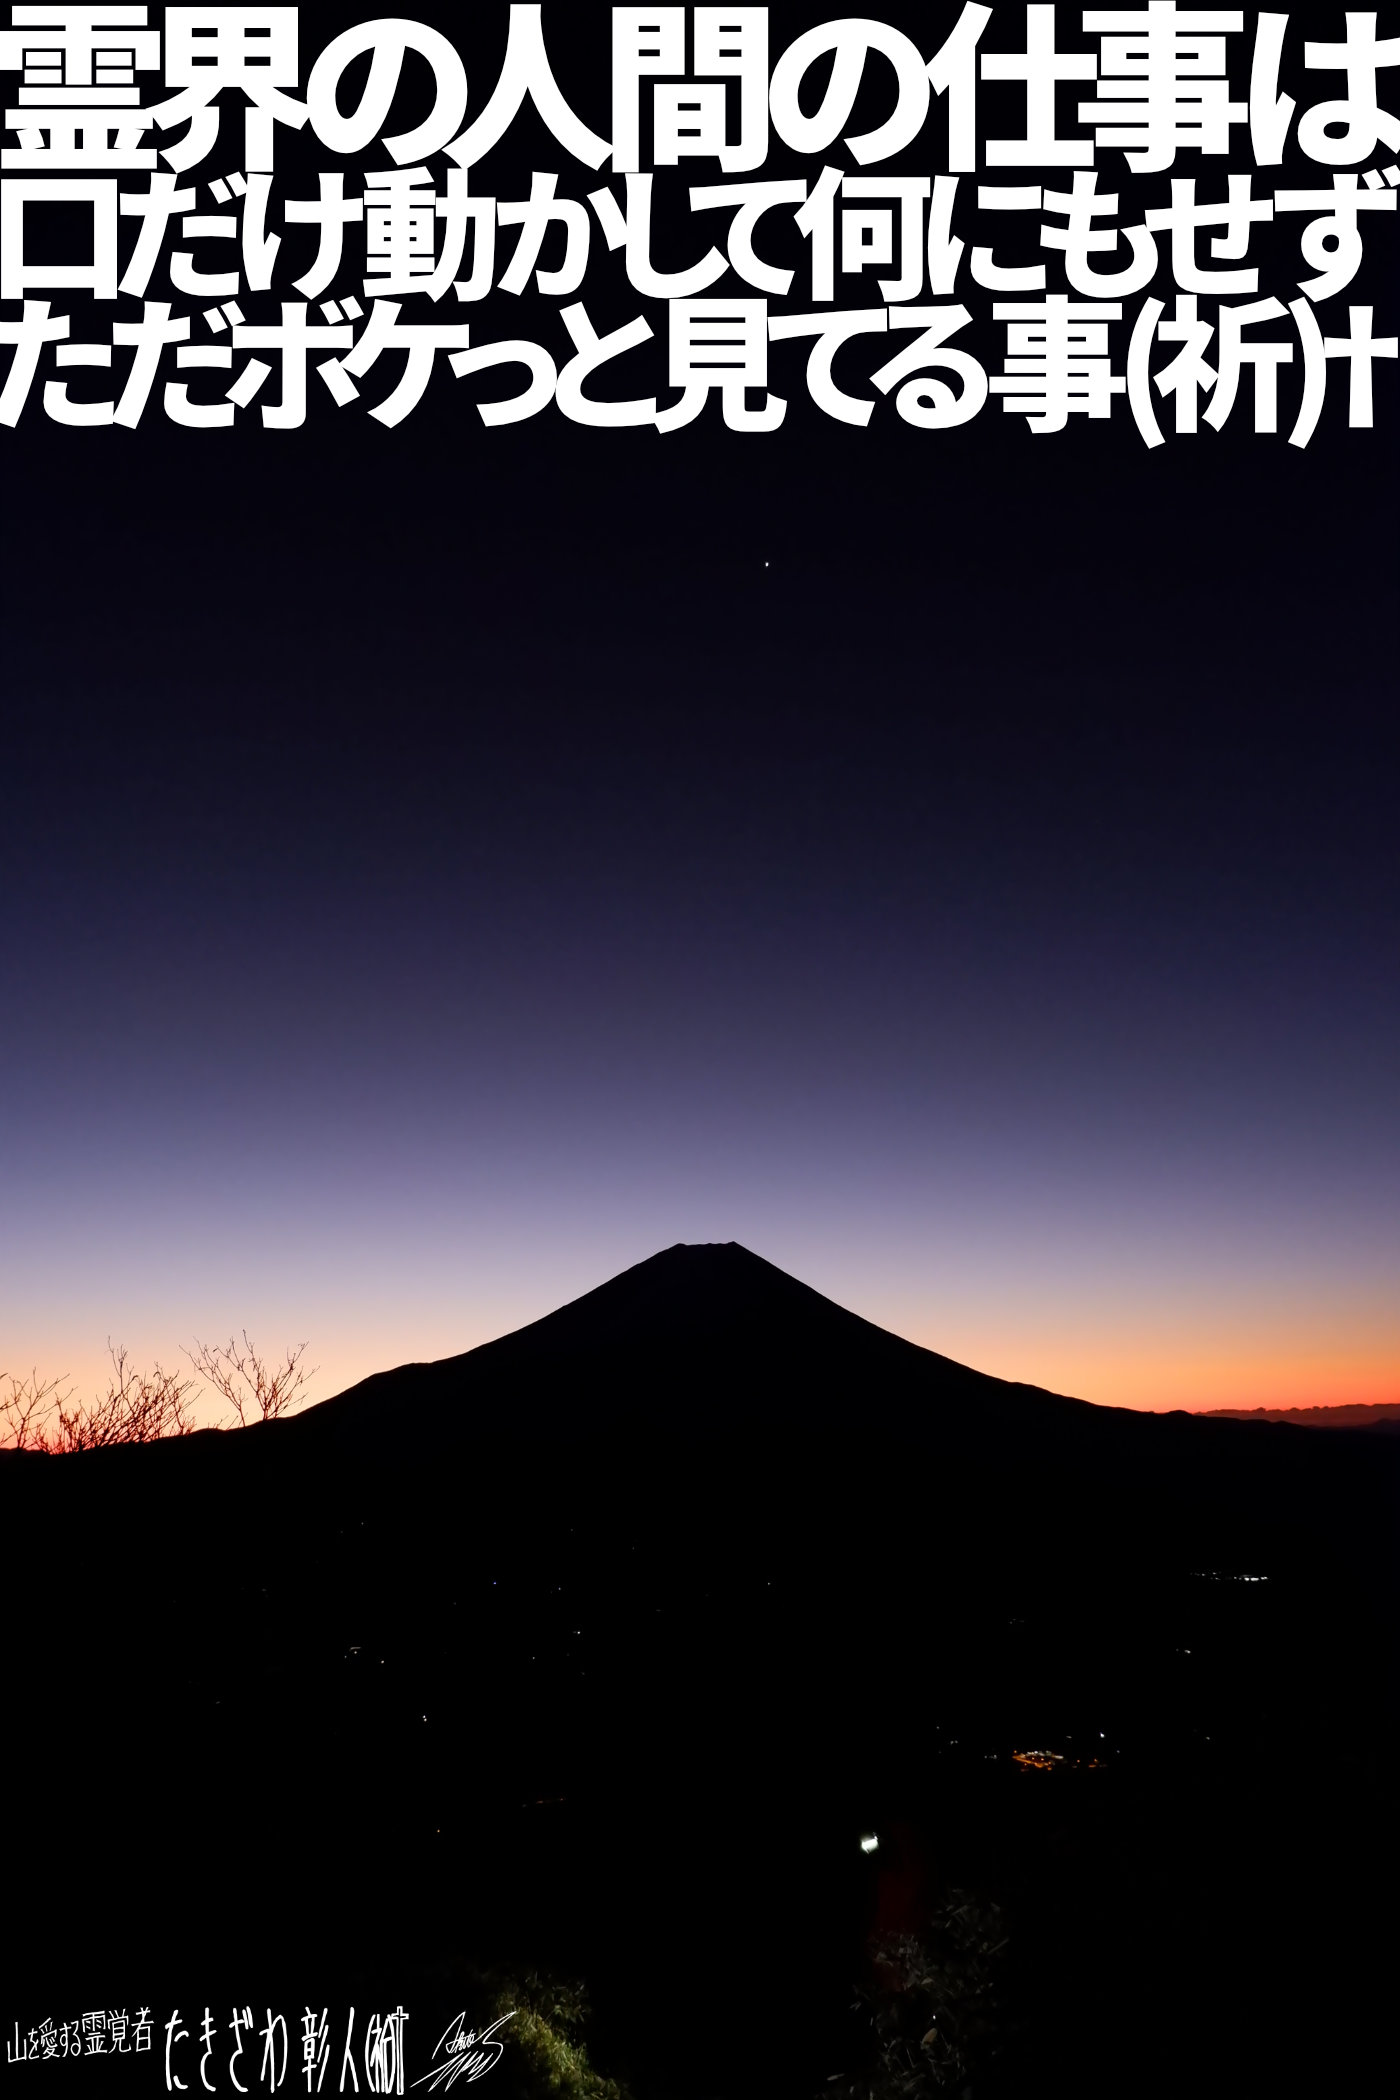 富士周辺アタック２３９霊界の人間の仕事は口だけ動かして何にもせずただボケっと見てる事